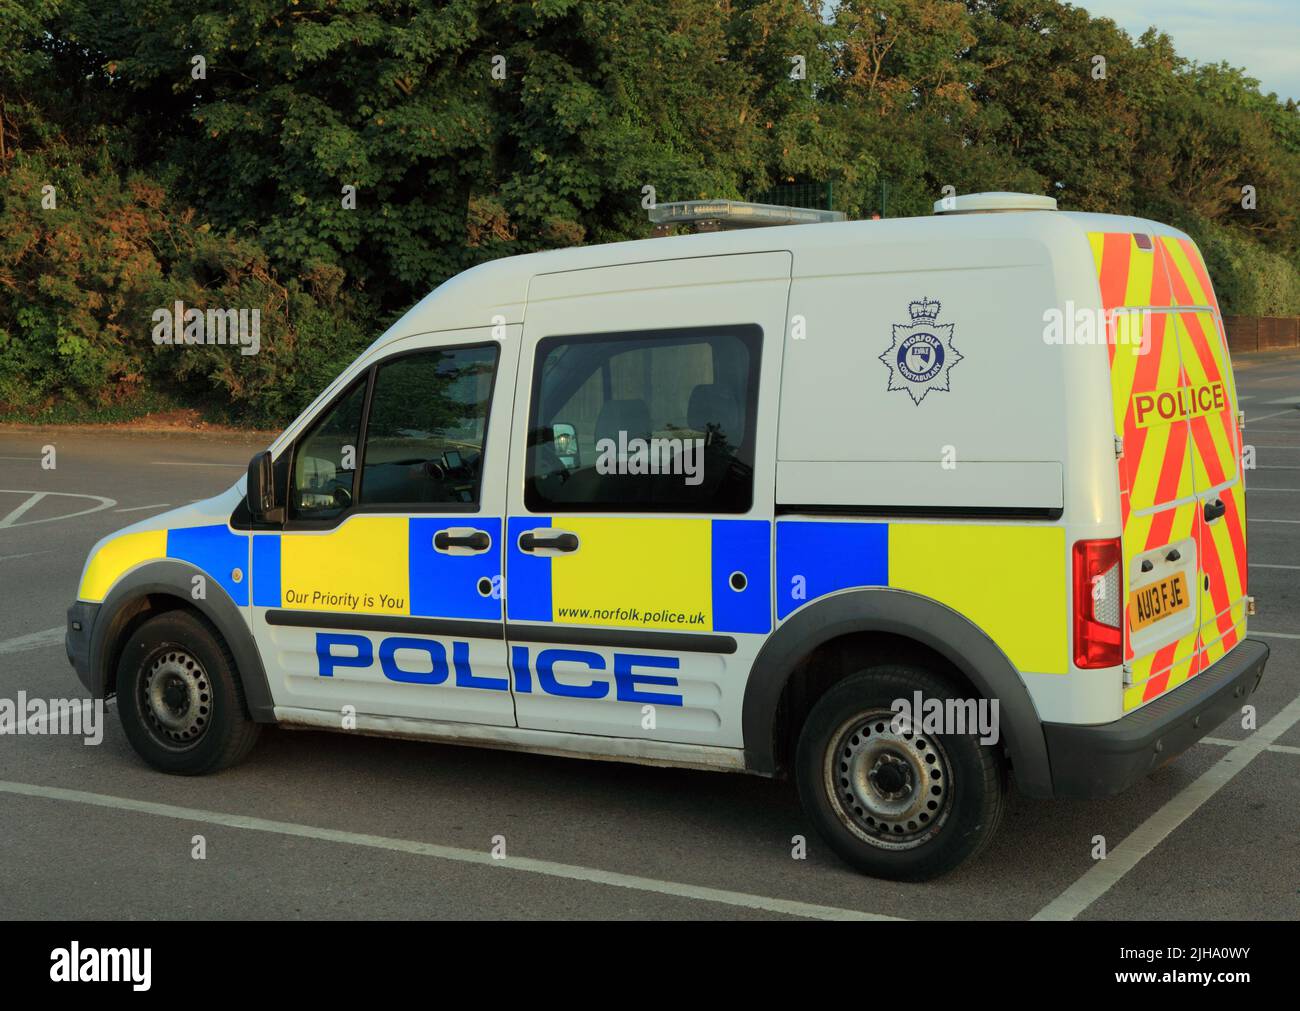 Véhicule de transport de la prison de police, fourgonnette, pour les prisonniers, Norfolk Constabulary, Norfolk, Angleterre Banque D'Images